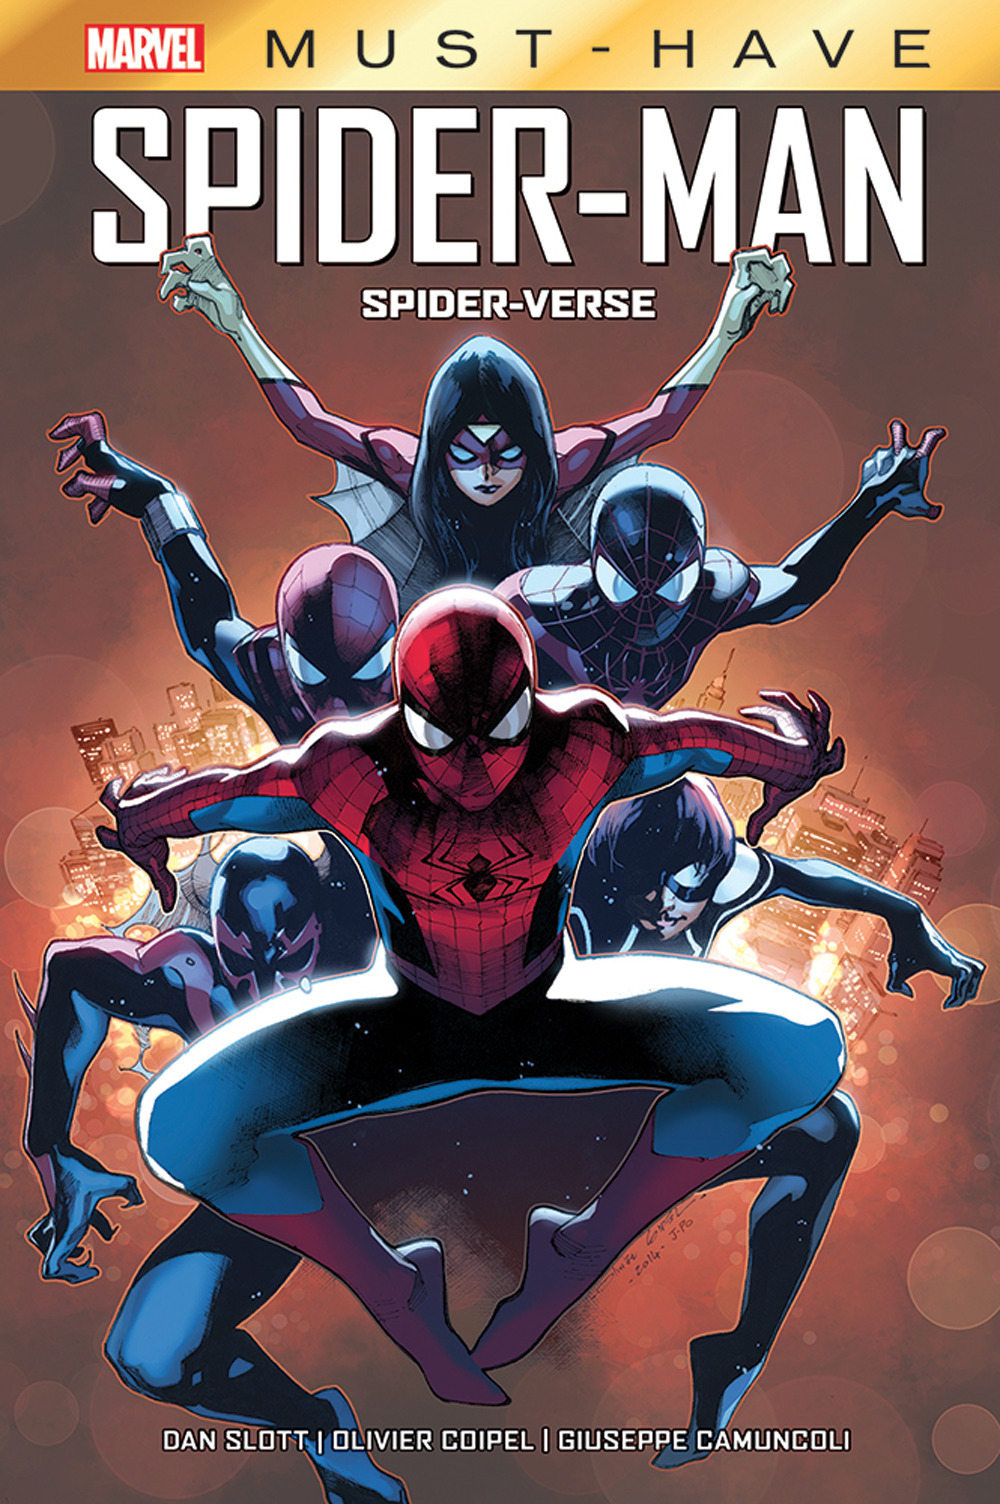 Image of Spider-verse. Spider-Man